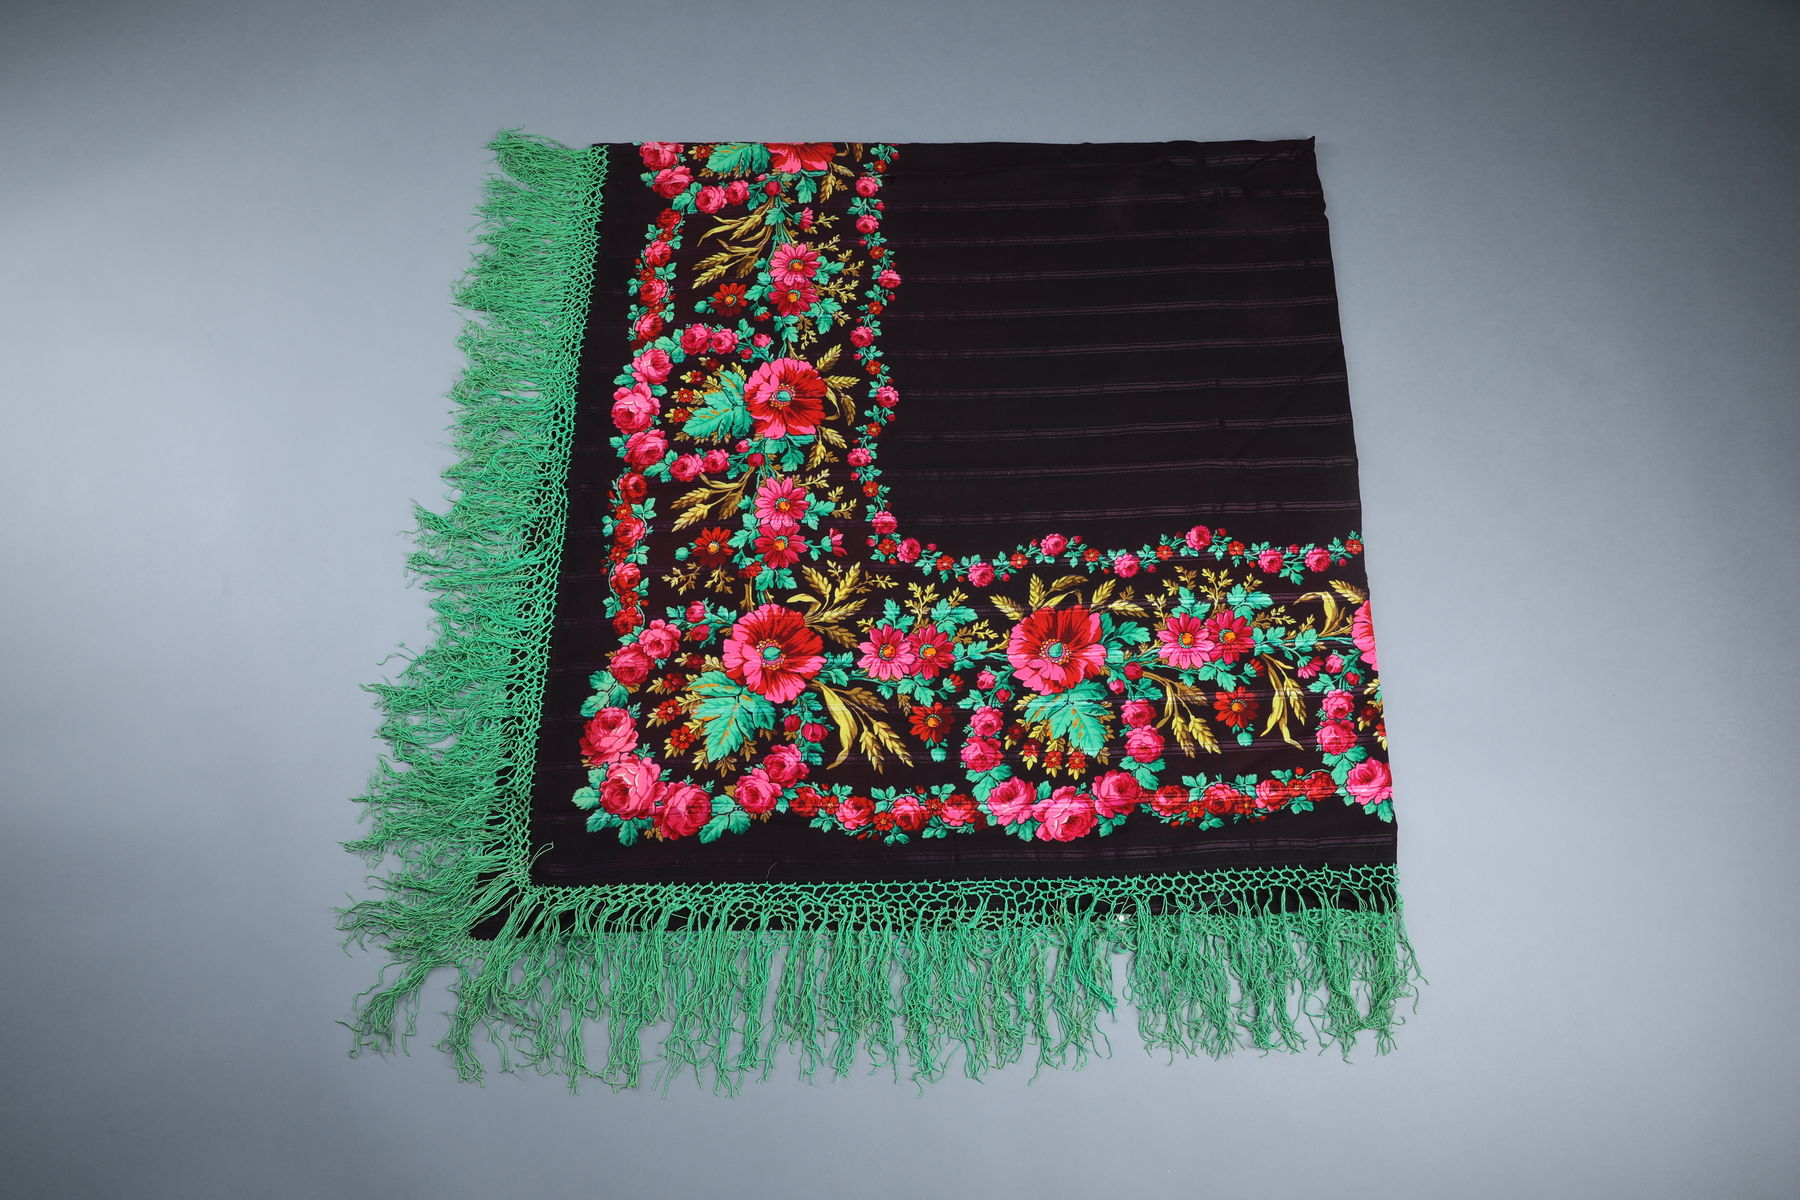 Kašmírový šátek s třásněmi, barevně tištěný, 2. pol. 19. století